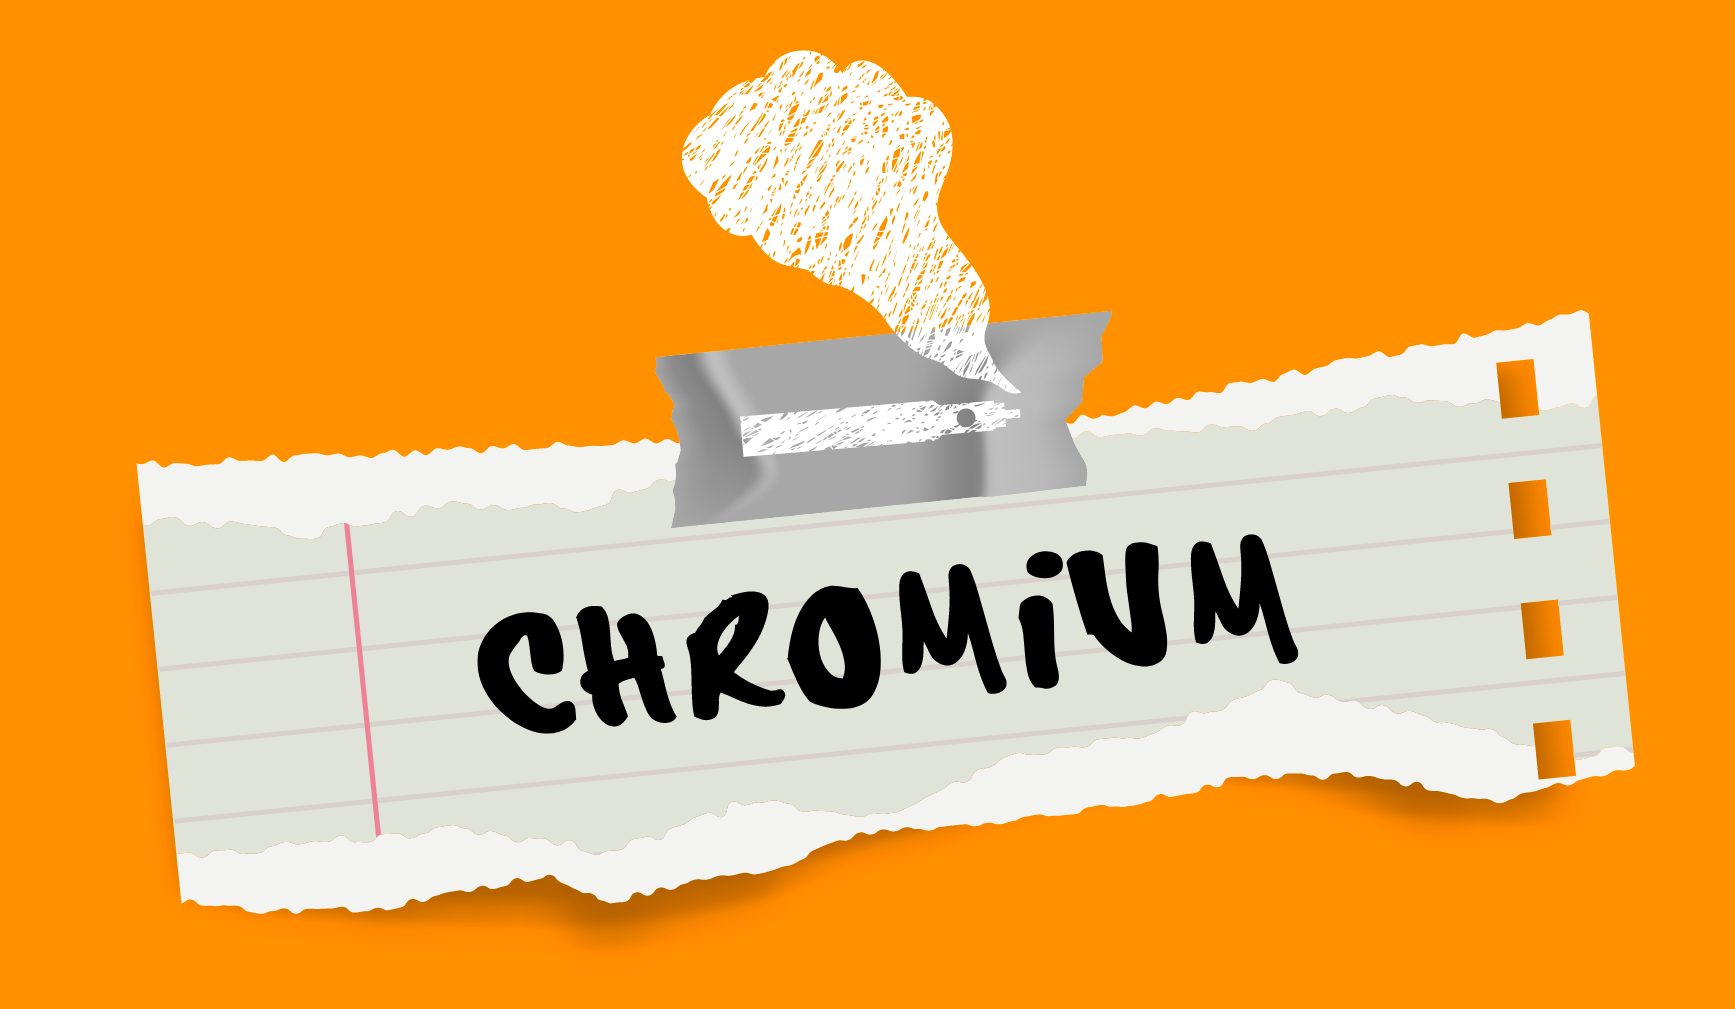 Chromium